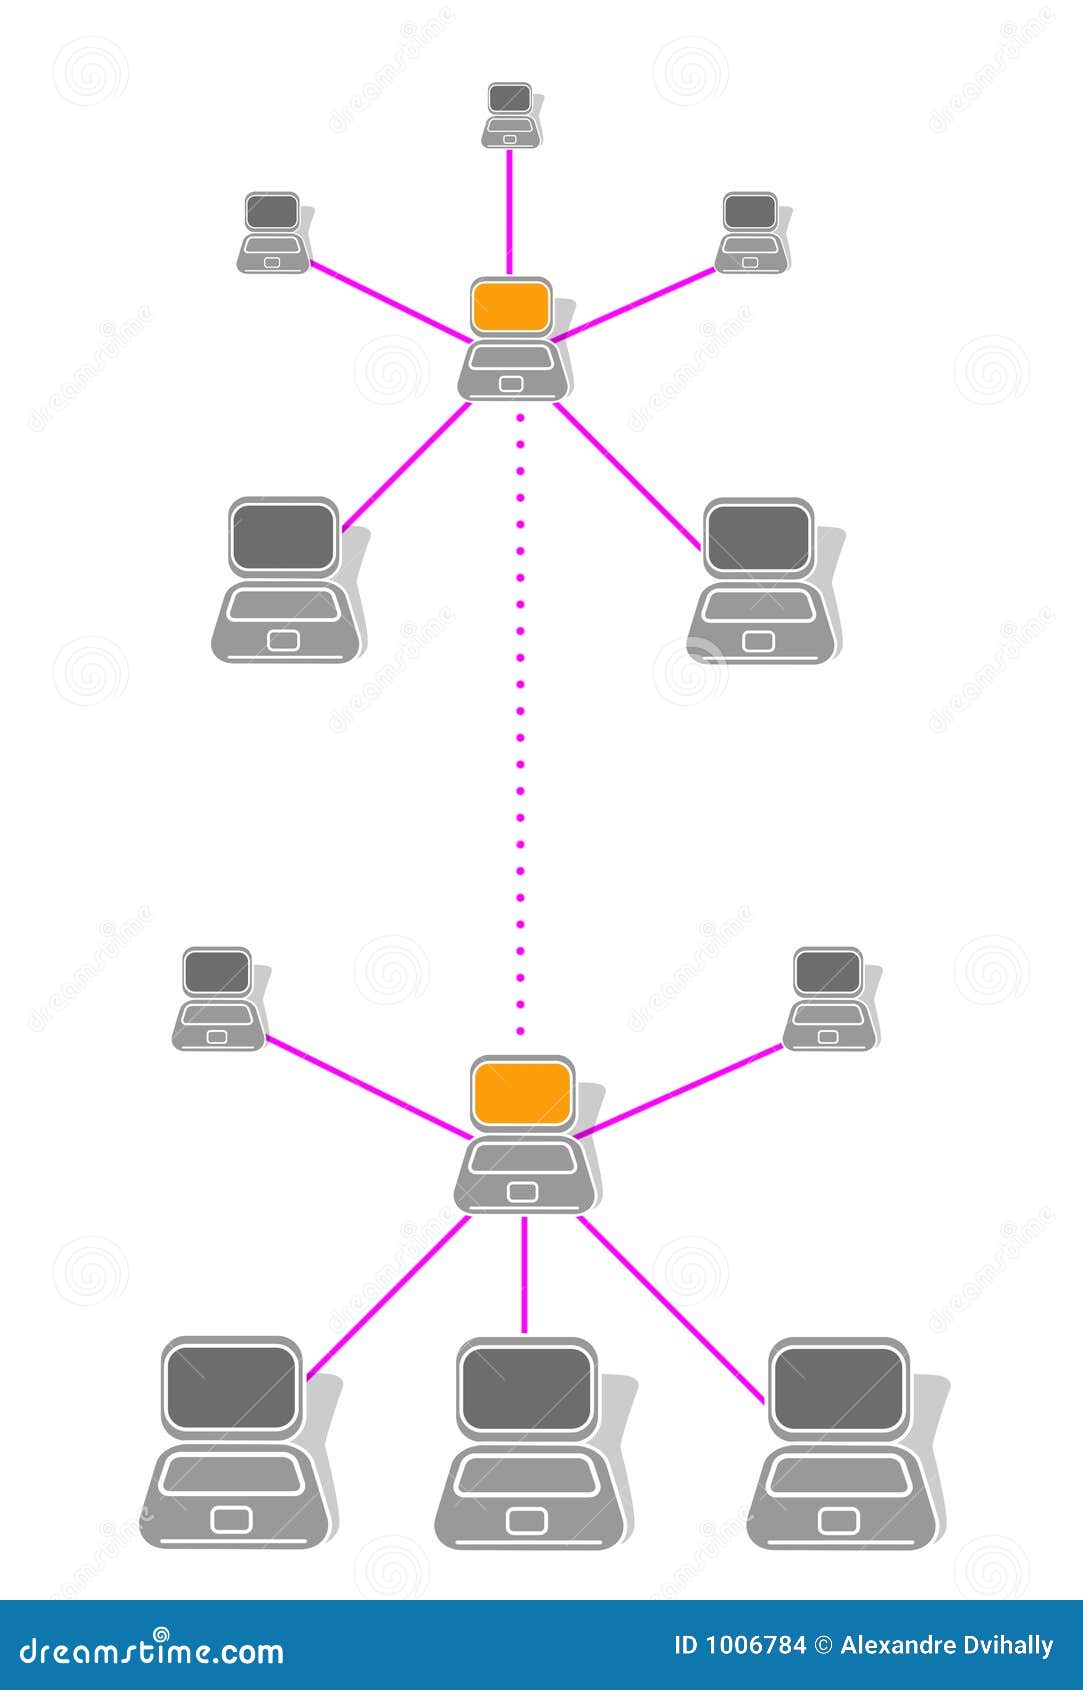 lan network